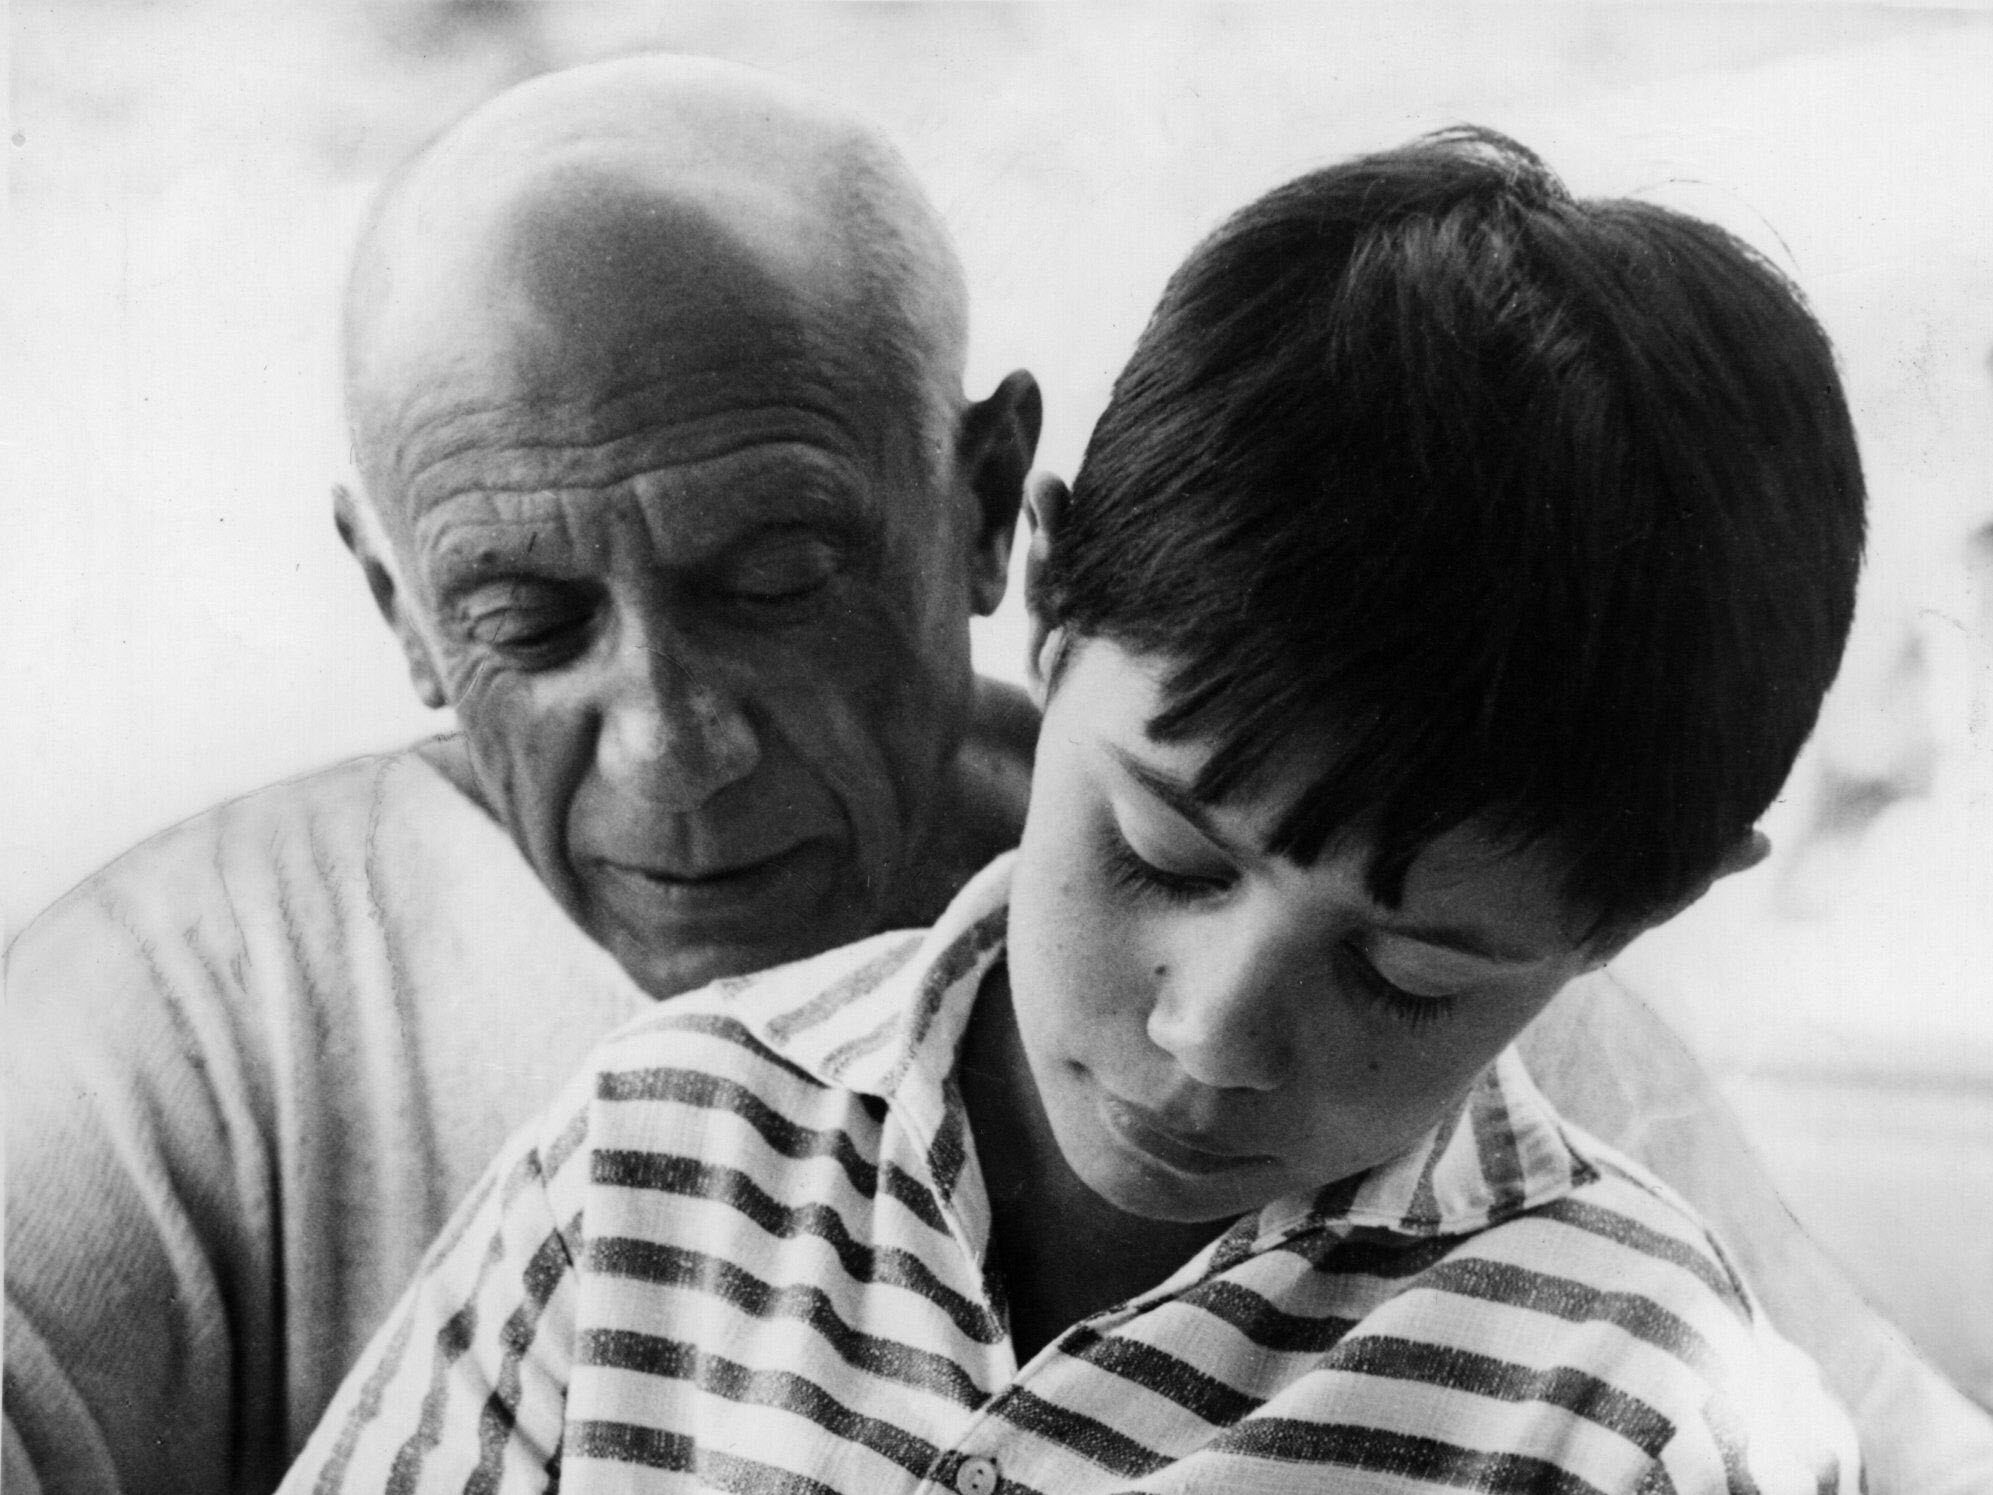 Pablo Picasso et son fils Claude à La Garoupe, Antibes (détail) le 19 août 1955. © Picture Alliance / DPA / Bridgeman Images 